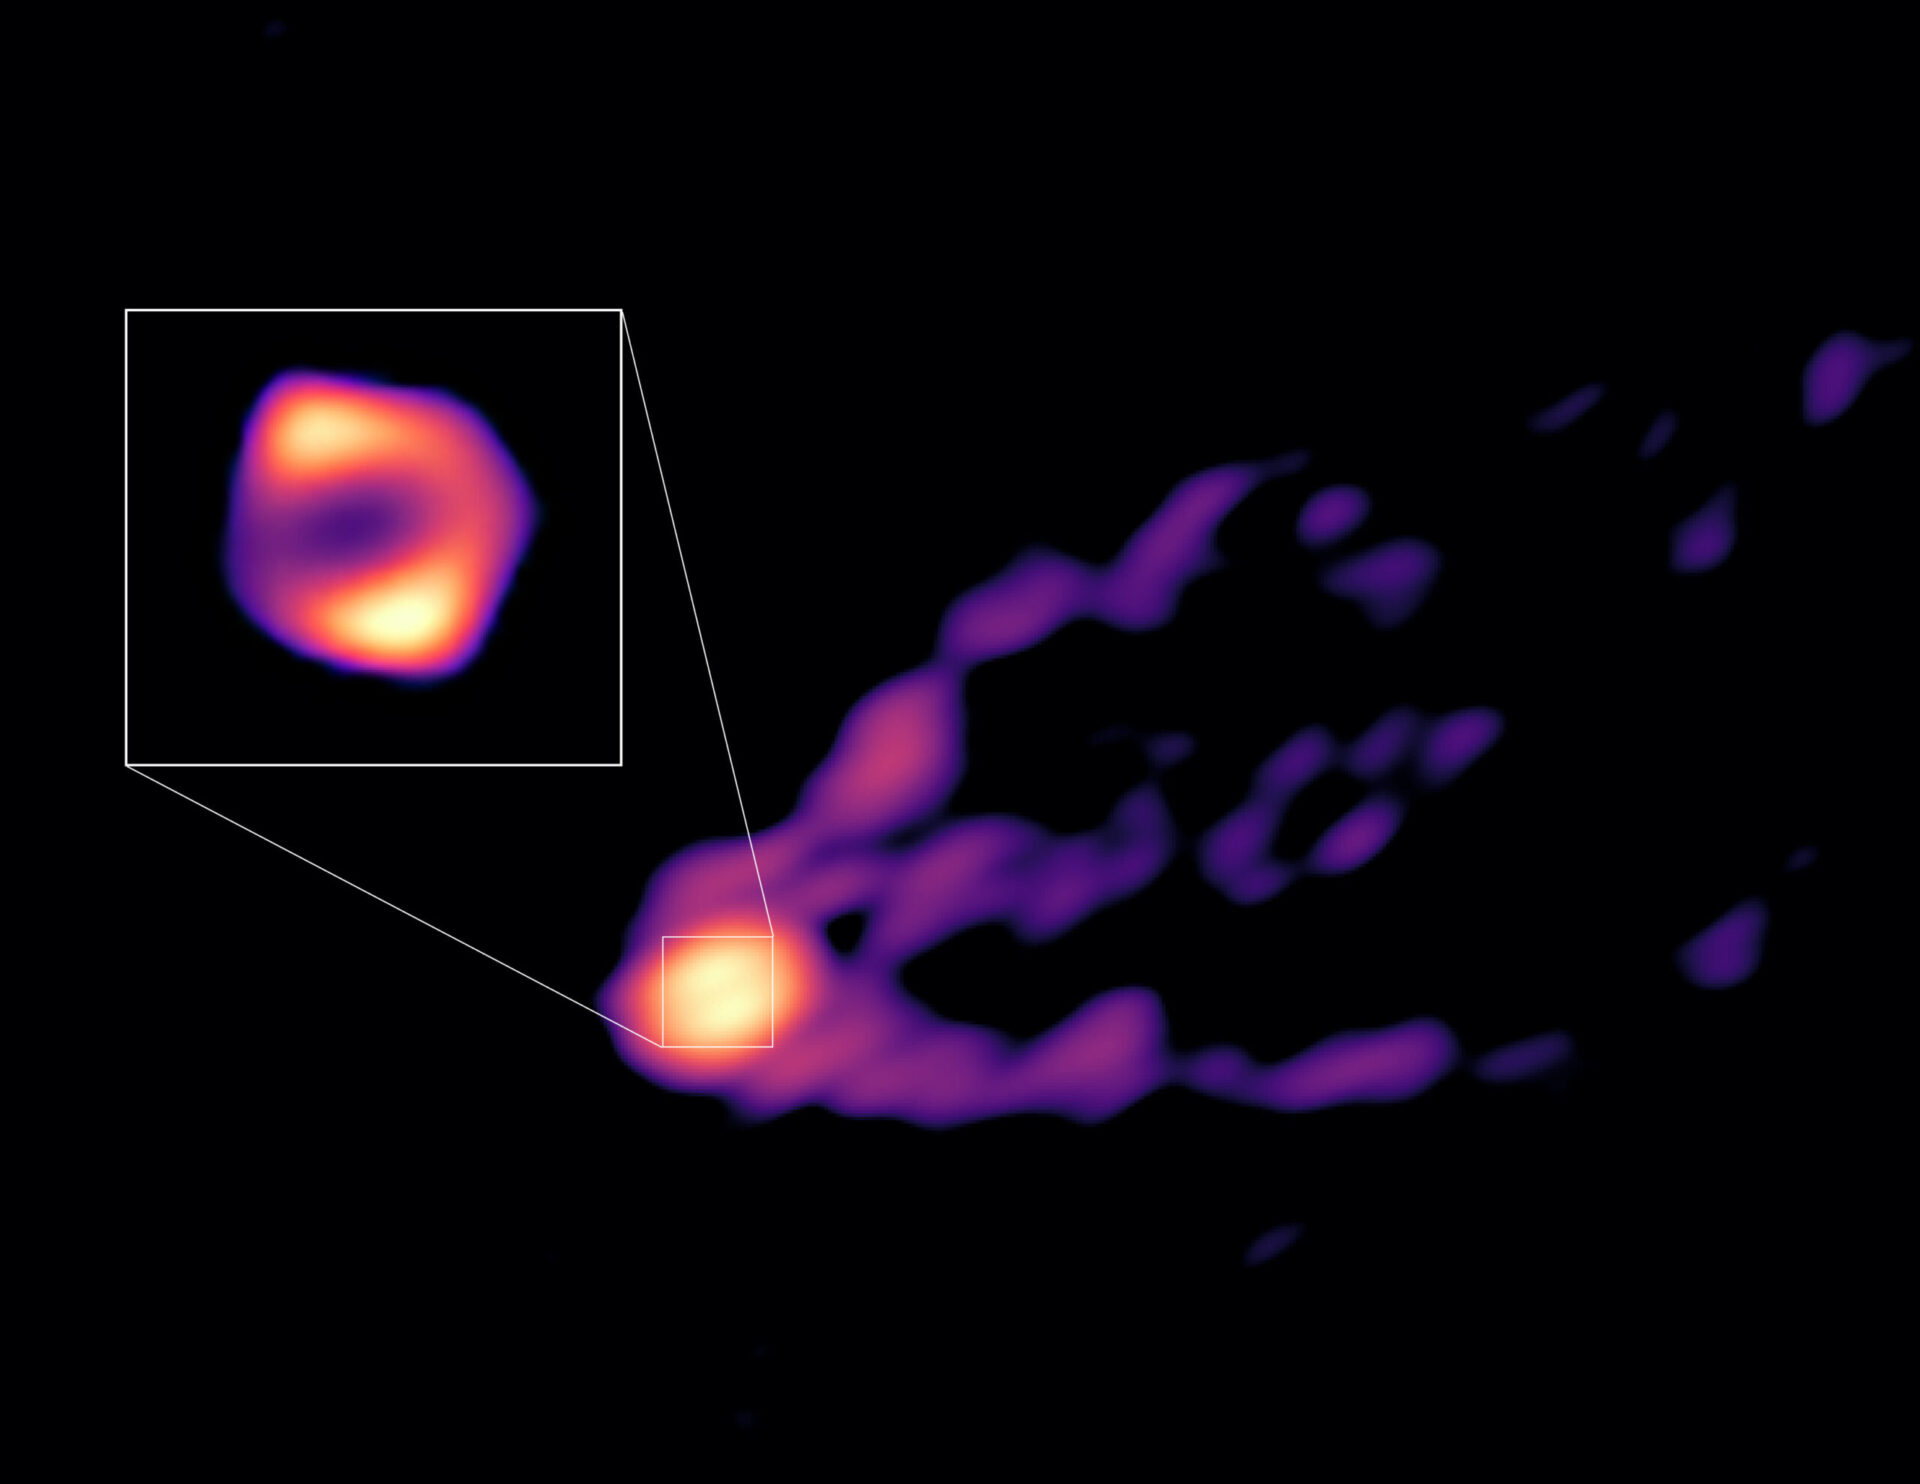 Esta imagen muestra el chorro y la sombra del agujero negro del centro de la galaxia M87 juntos por primera vez. Las observaciones se obtuvieron con telescopios del Global Millimeter VLBI Array (GMVA), el Atacama Large Millimeter/submillimeter Array (ALMA) y el Telescopio de Groenlandia. Esta imagen da a los científicos el contexto necesario para entender cómo se forma el potente chorro. Las nuevas observaciones también revelaron que el anillo del agujero negro, destacado en el recuadro, es un 50% más grande que el anillo observado en longitudes de onda de radio más cortas por el Event Horizon Telescope (EHT). Esto sugiere que en la nueva imagen vemos más del material que está cayendo hacia el agujero negro de lo que podríamos ver con el EHT. Crédito: R.-S. Lu (SHAO), E. Ros (MPIfR), S. Dagnello (NRAO/AUI/NSF)